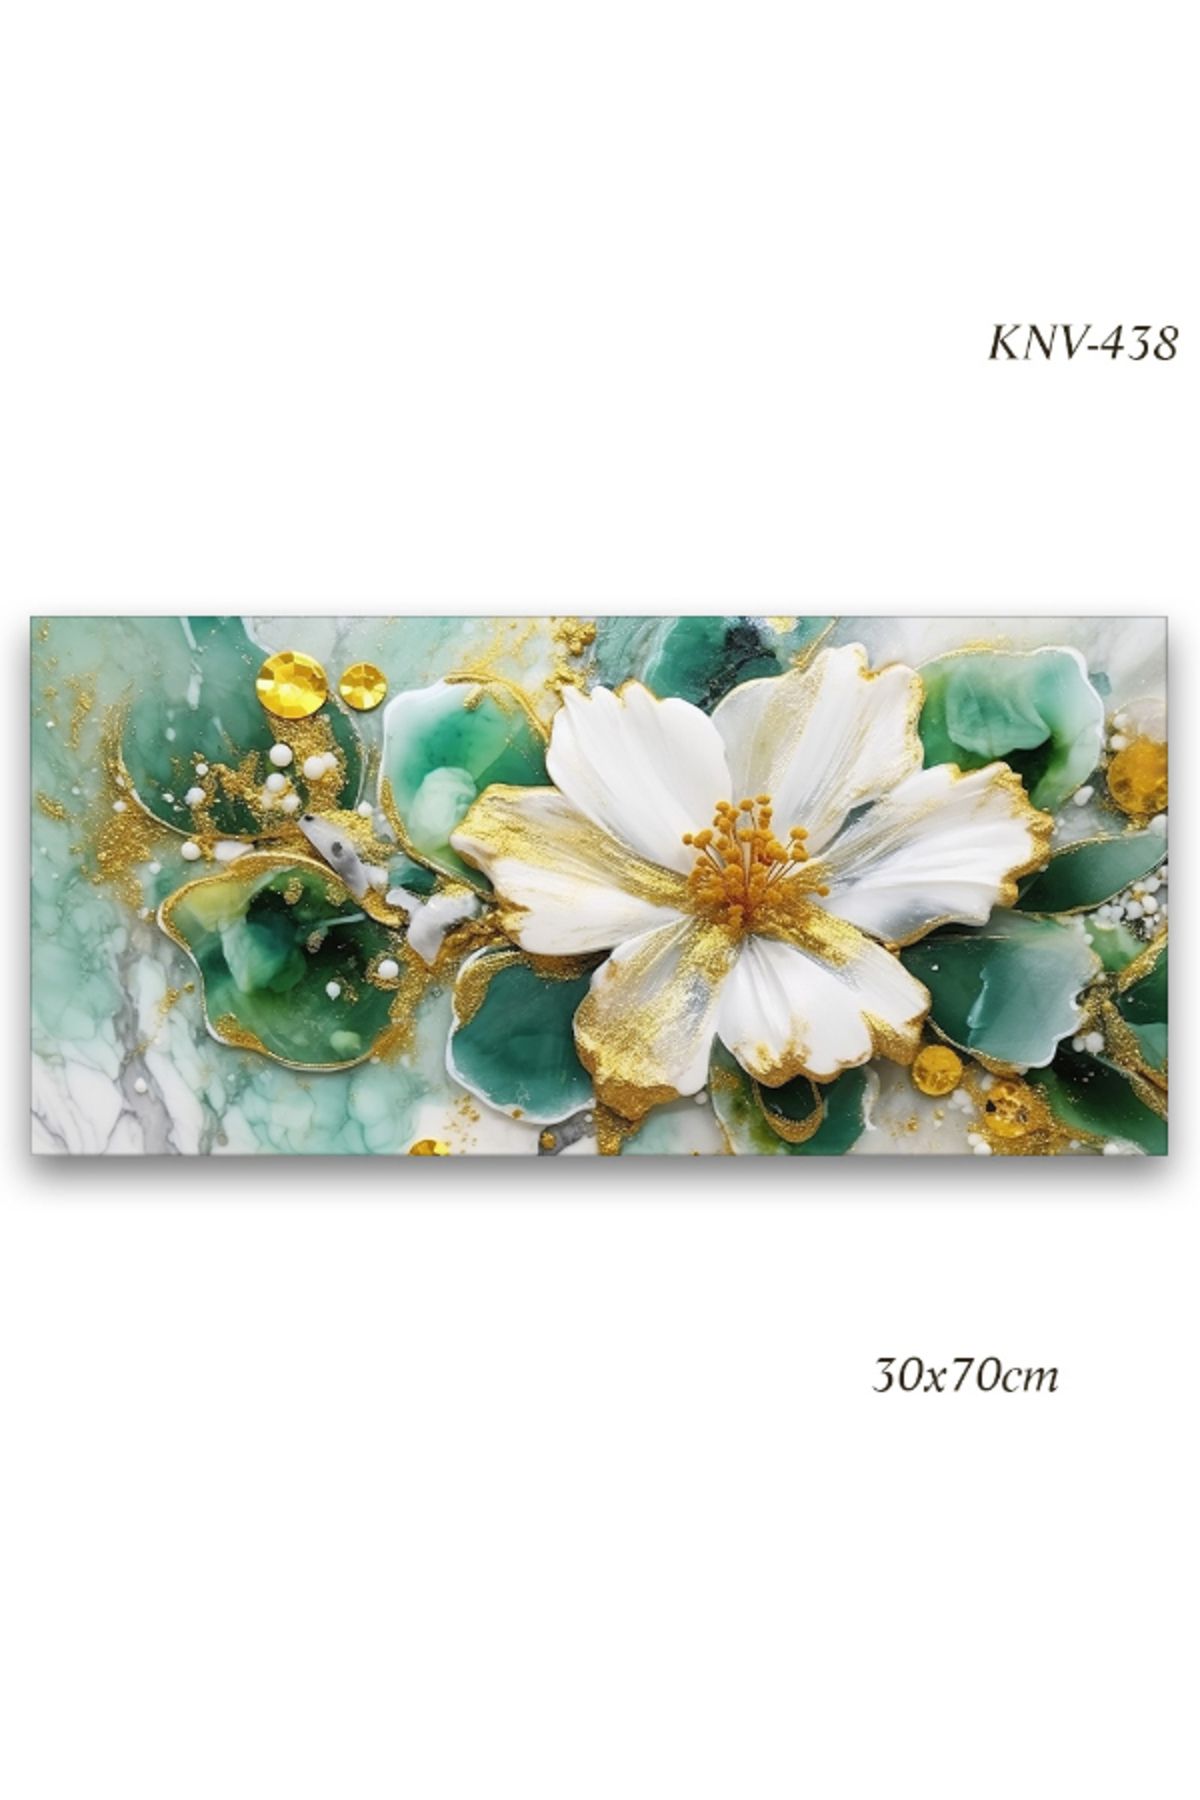 Evimona Yağlı Boya Görünümlü Çiçek Kanvas Tablo